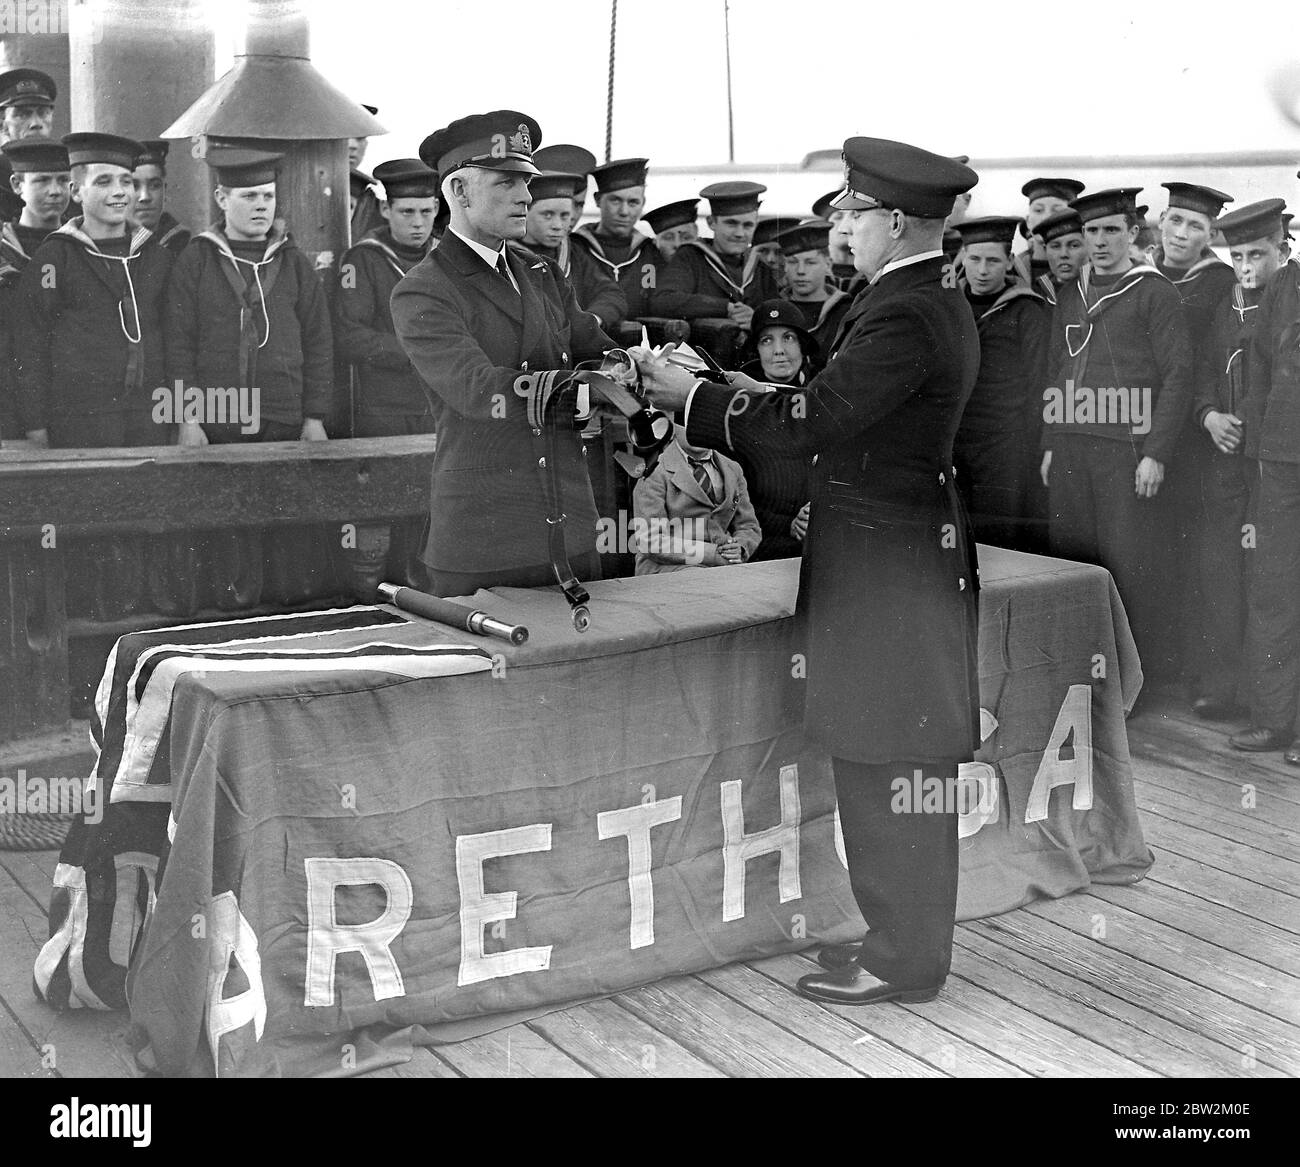 An Bord des Arethusa-Trainingsschiffes. Commander C.W. Bower (befehligender Arethusa) übergibt John Stonor, einem alten Arethusa-Jungen, ein Schwert, nachdem er den Rang eines Warrant Officers in der Royal Navy erreicht hat. Stockfoto